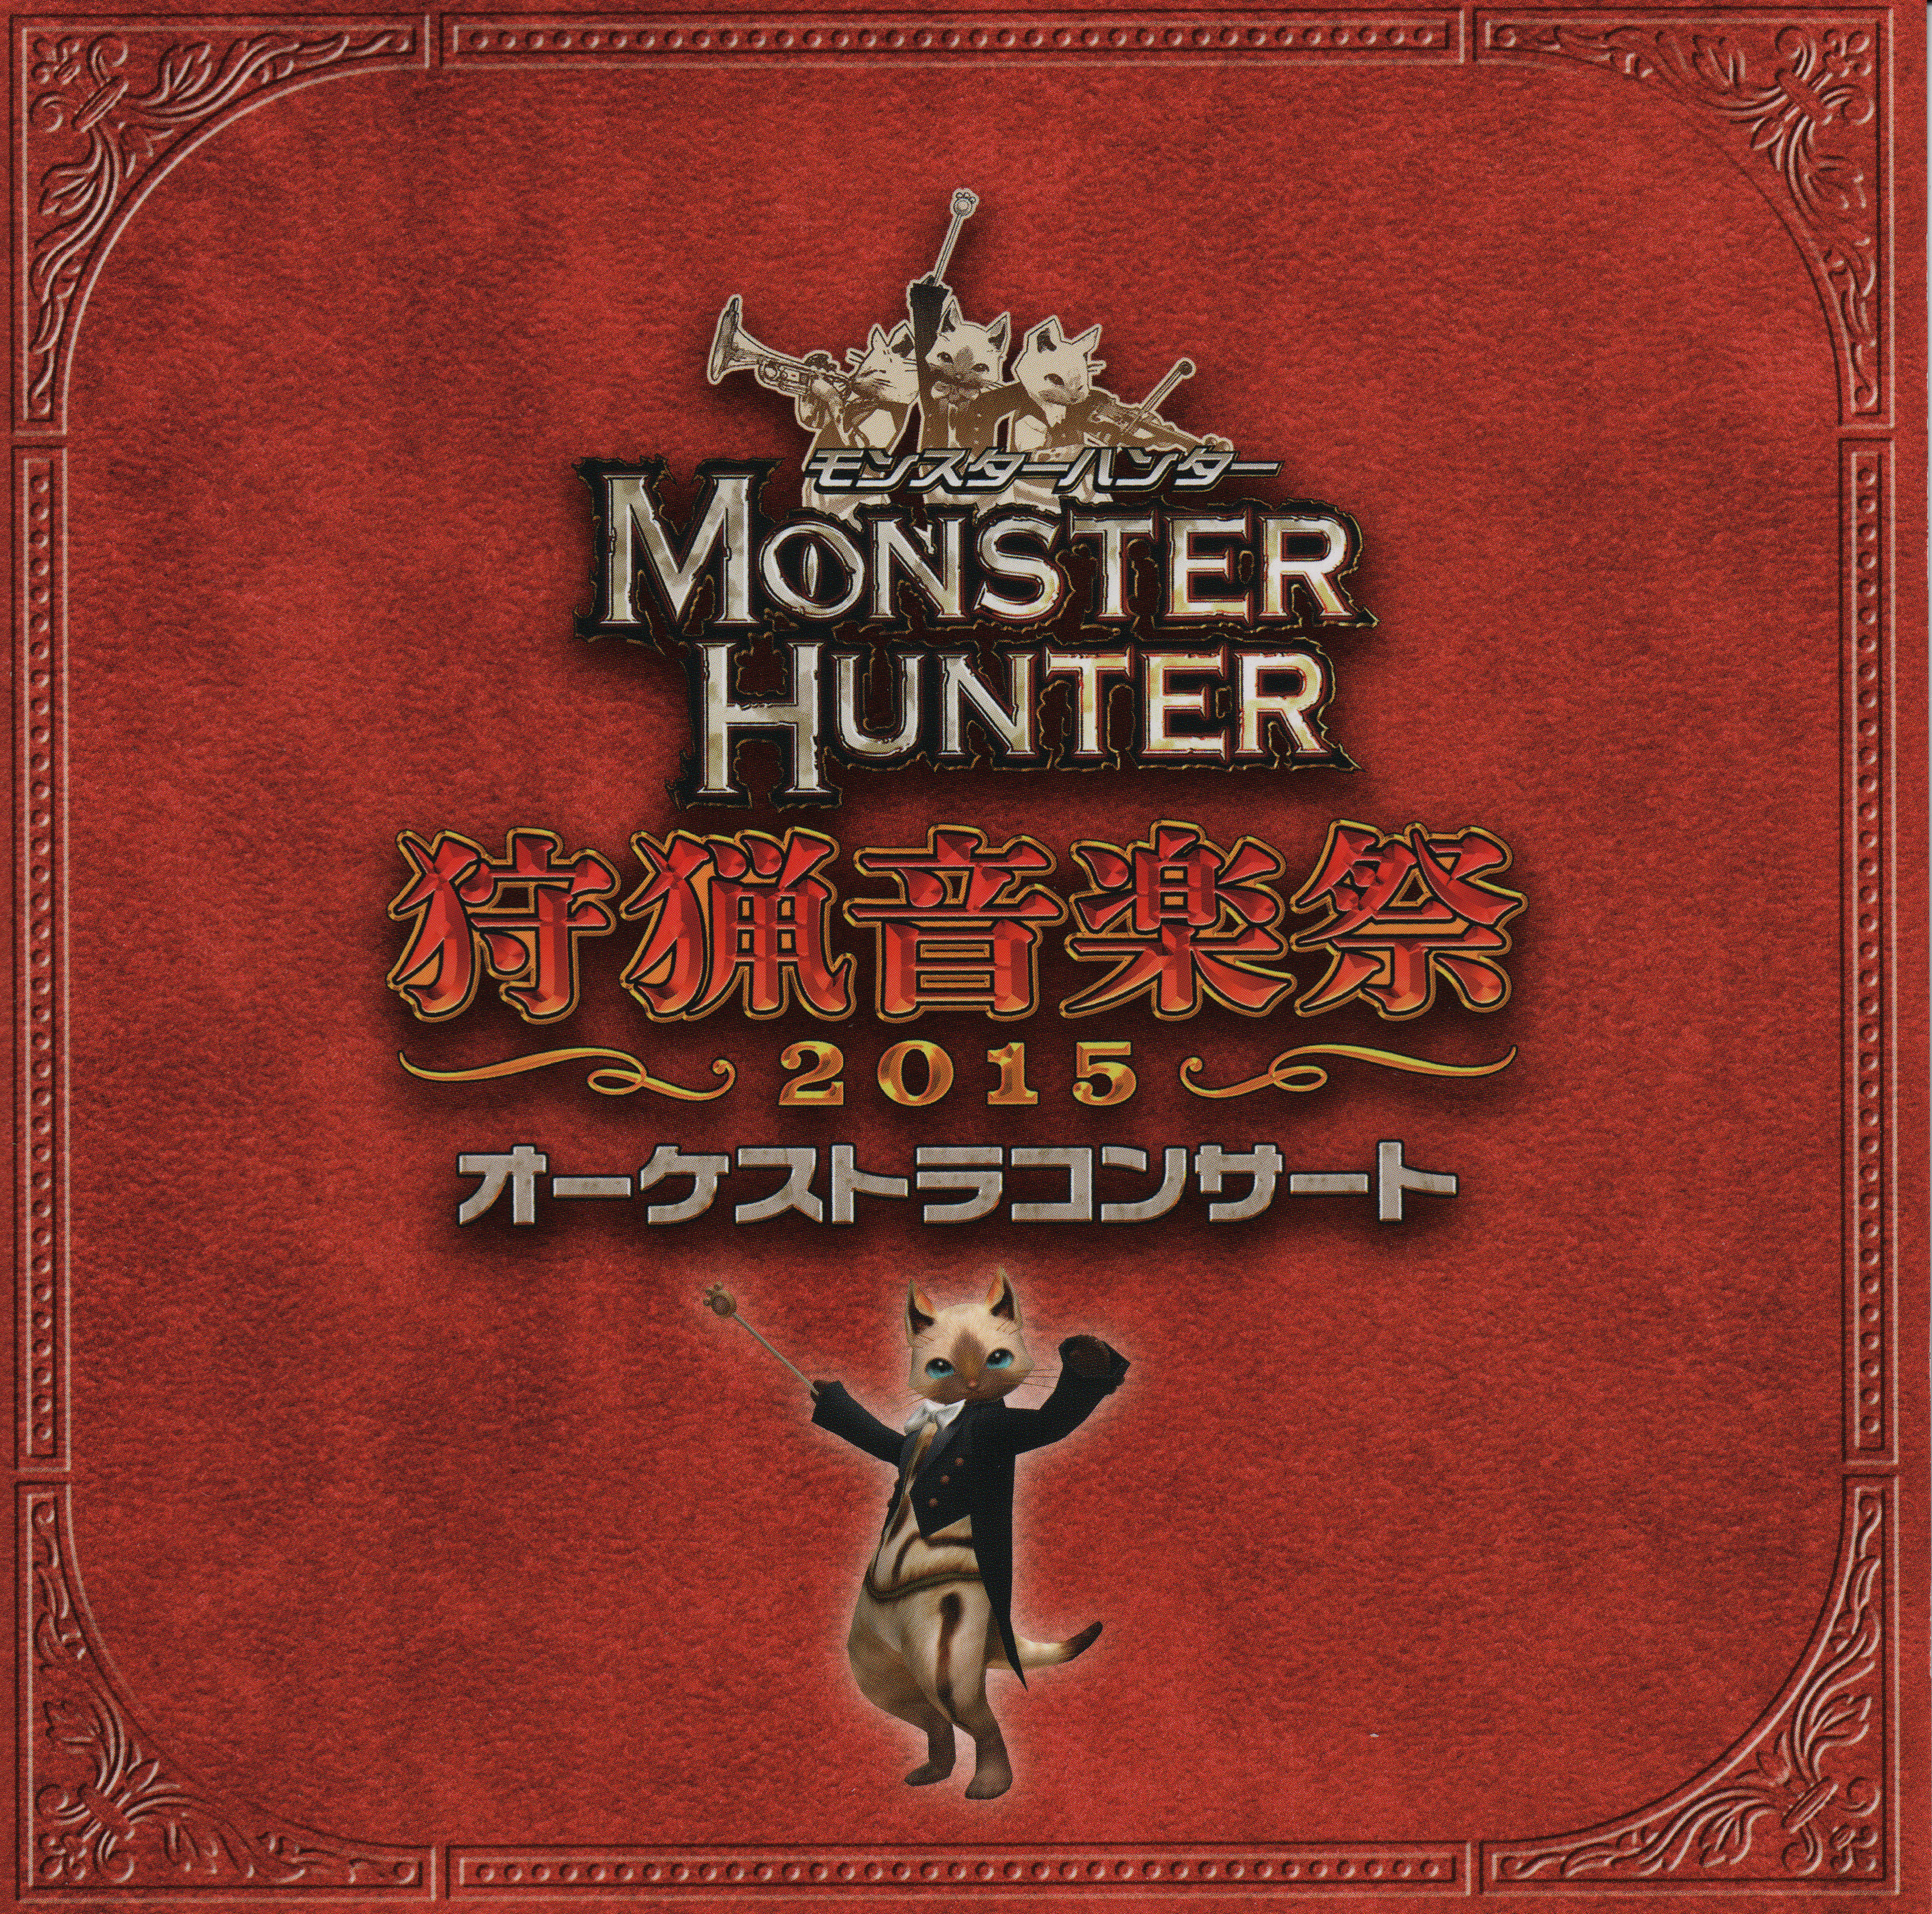 Monster Hunter In Concert 2015